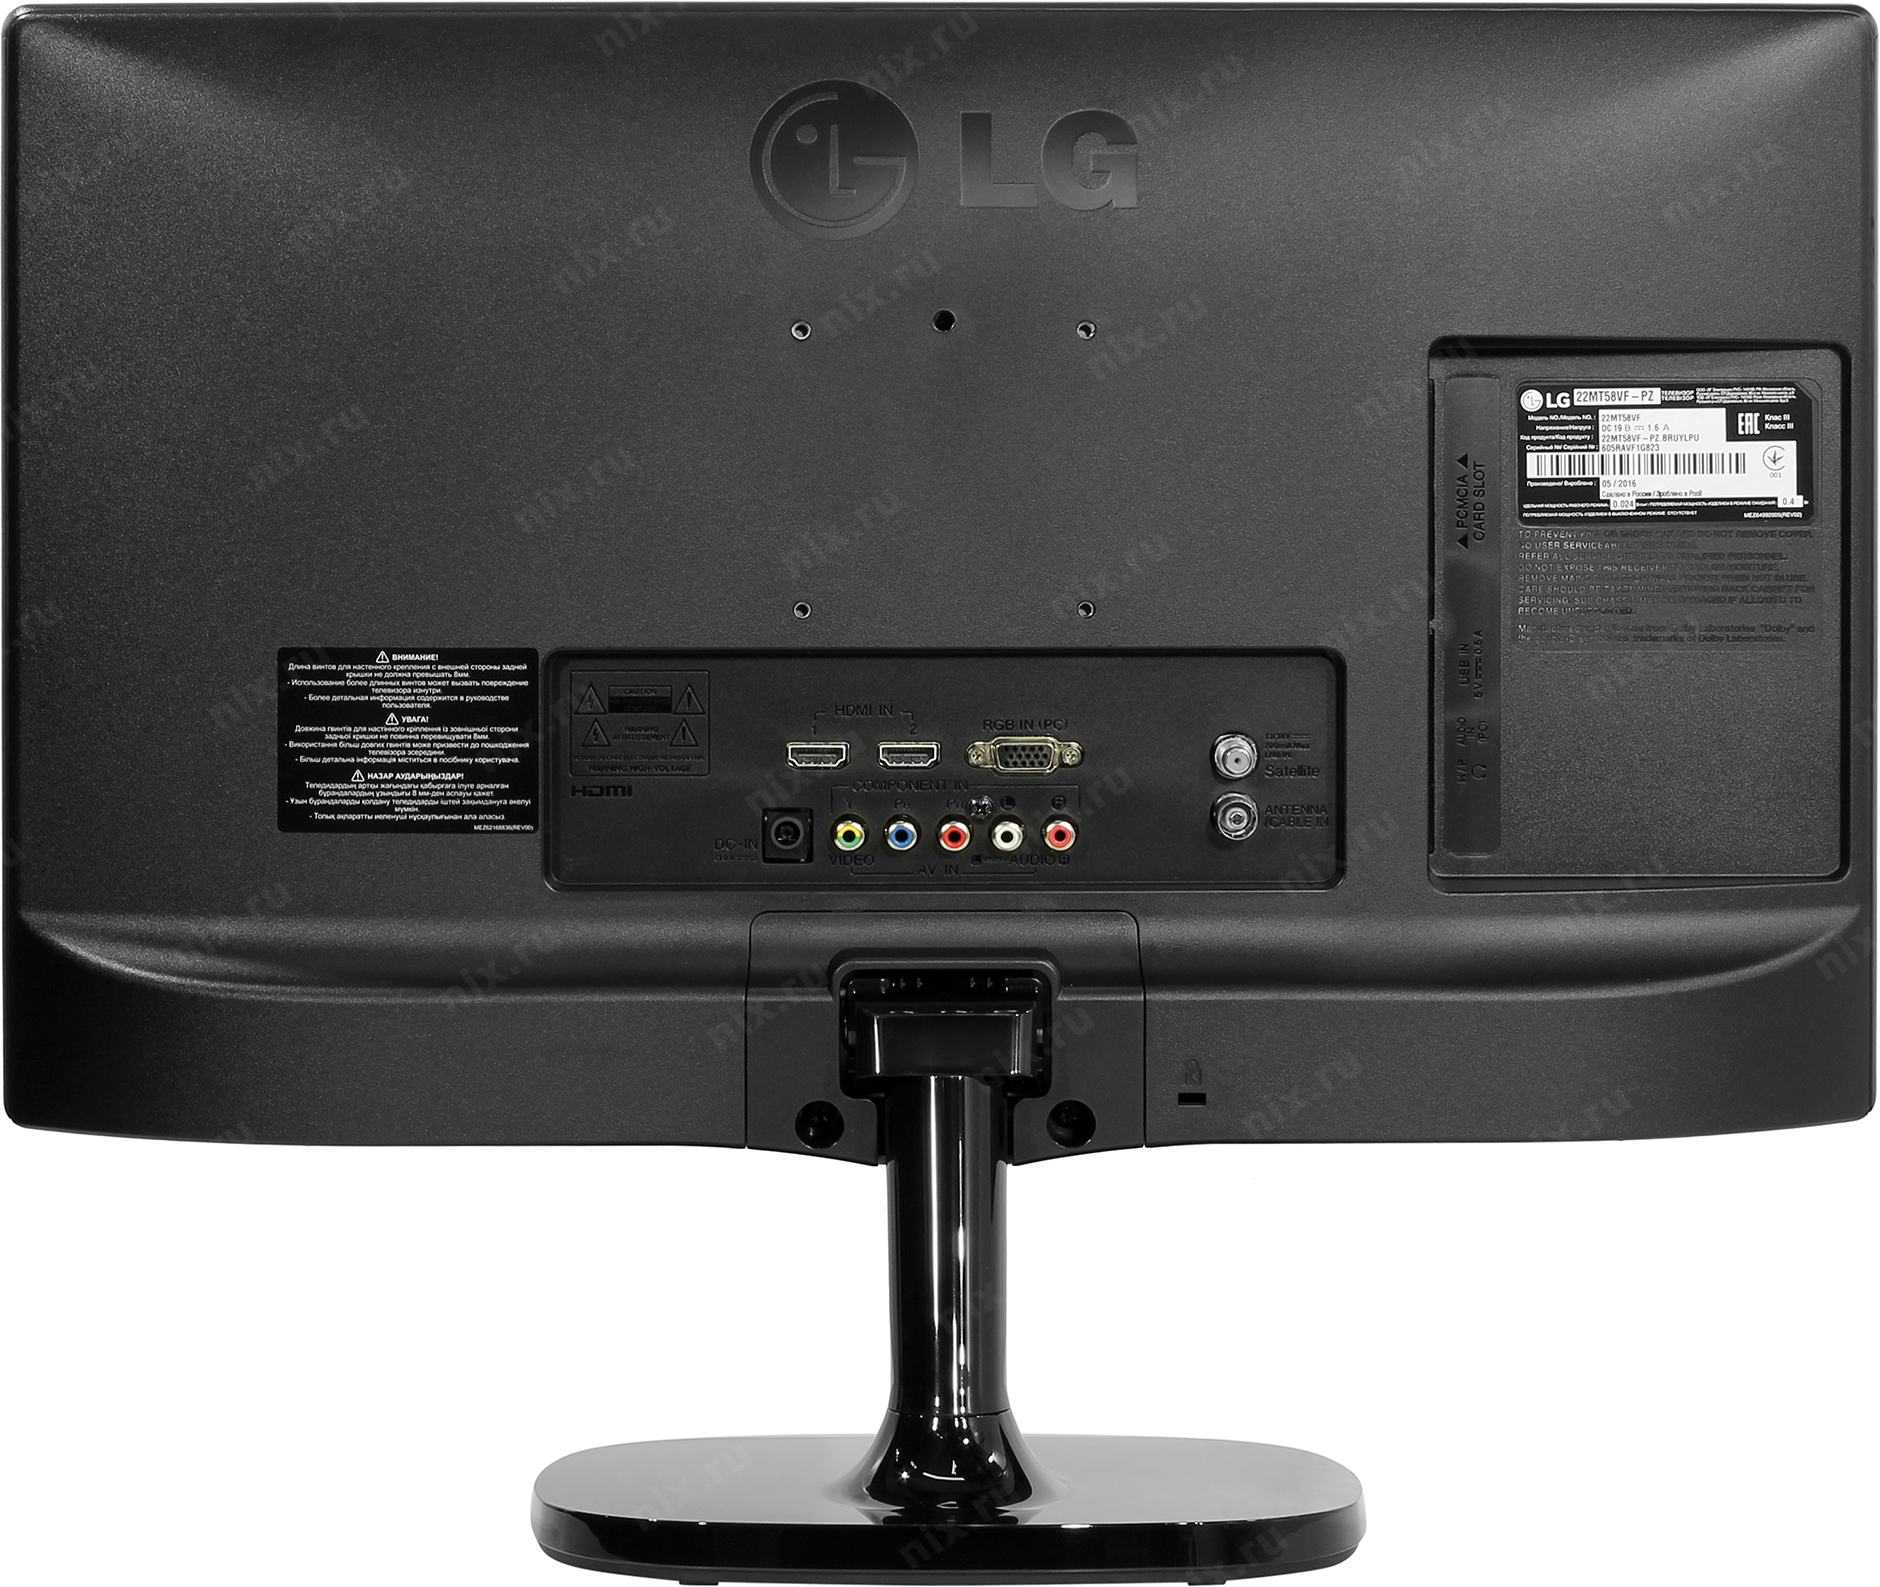 Телевизор LG 22LN548M - подробные характеристики обзоры видео фото Цены в интернет-магазинах где можно купить телевизор LG 22LN548M